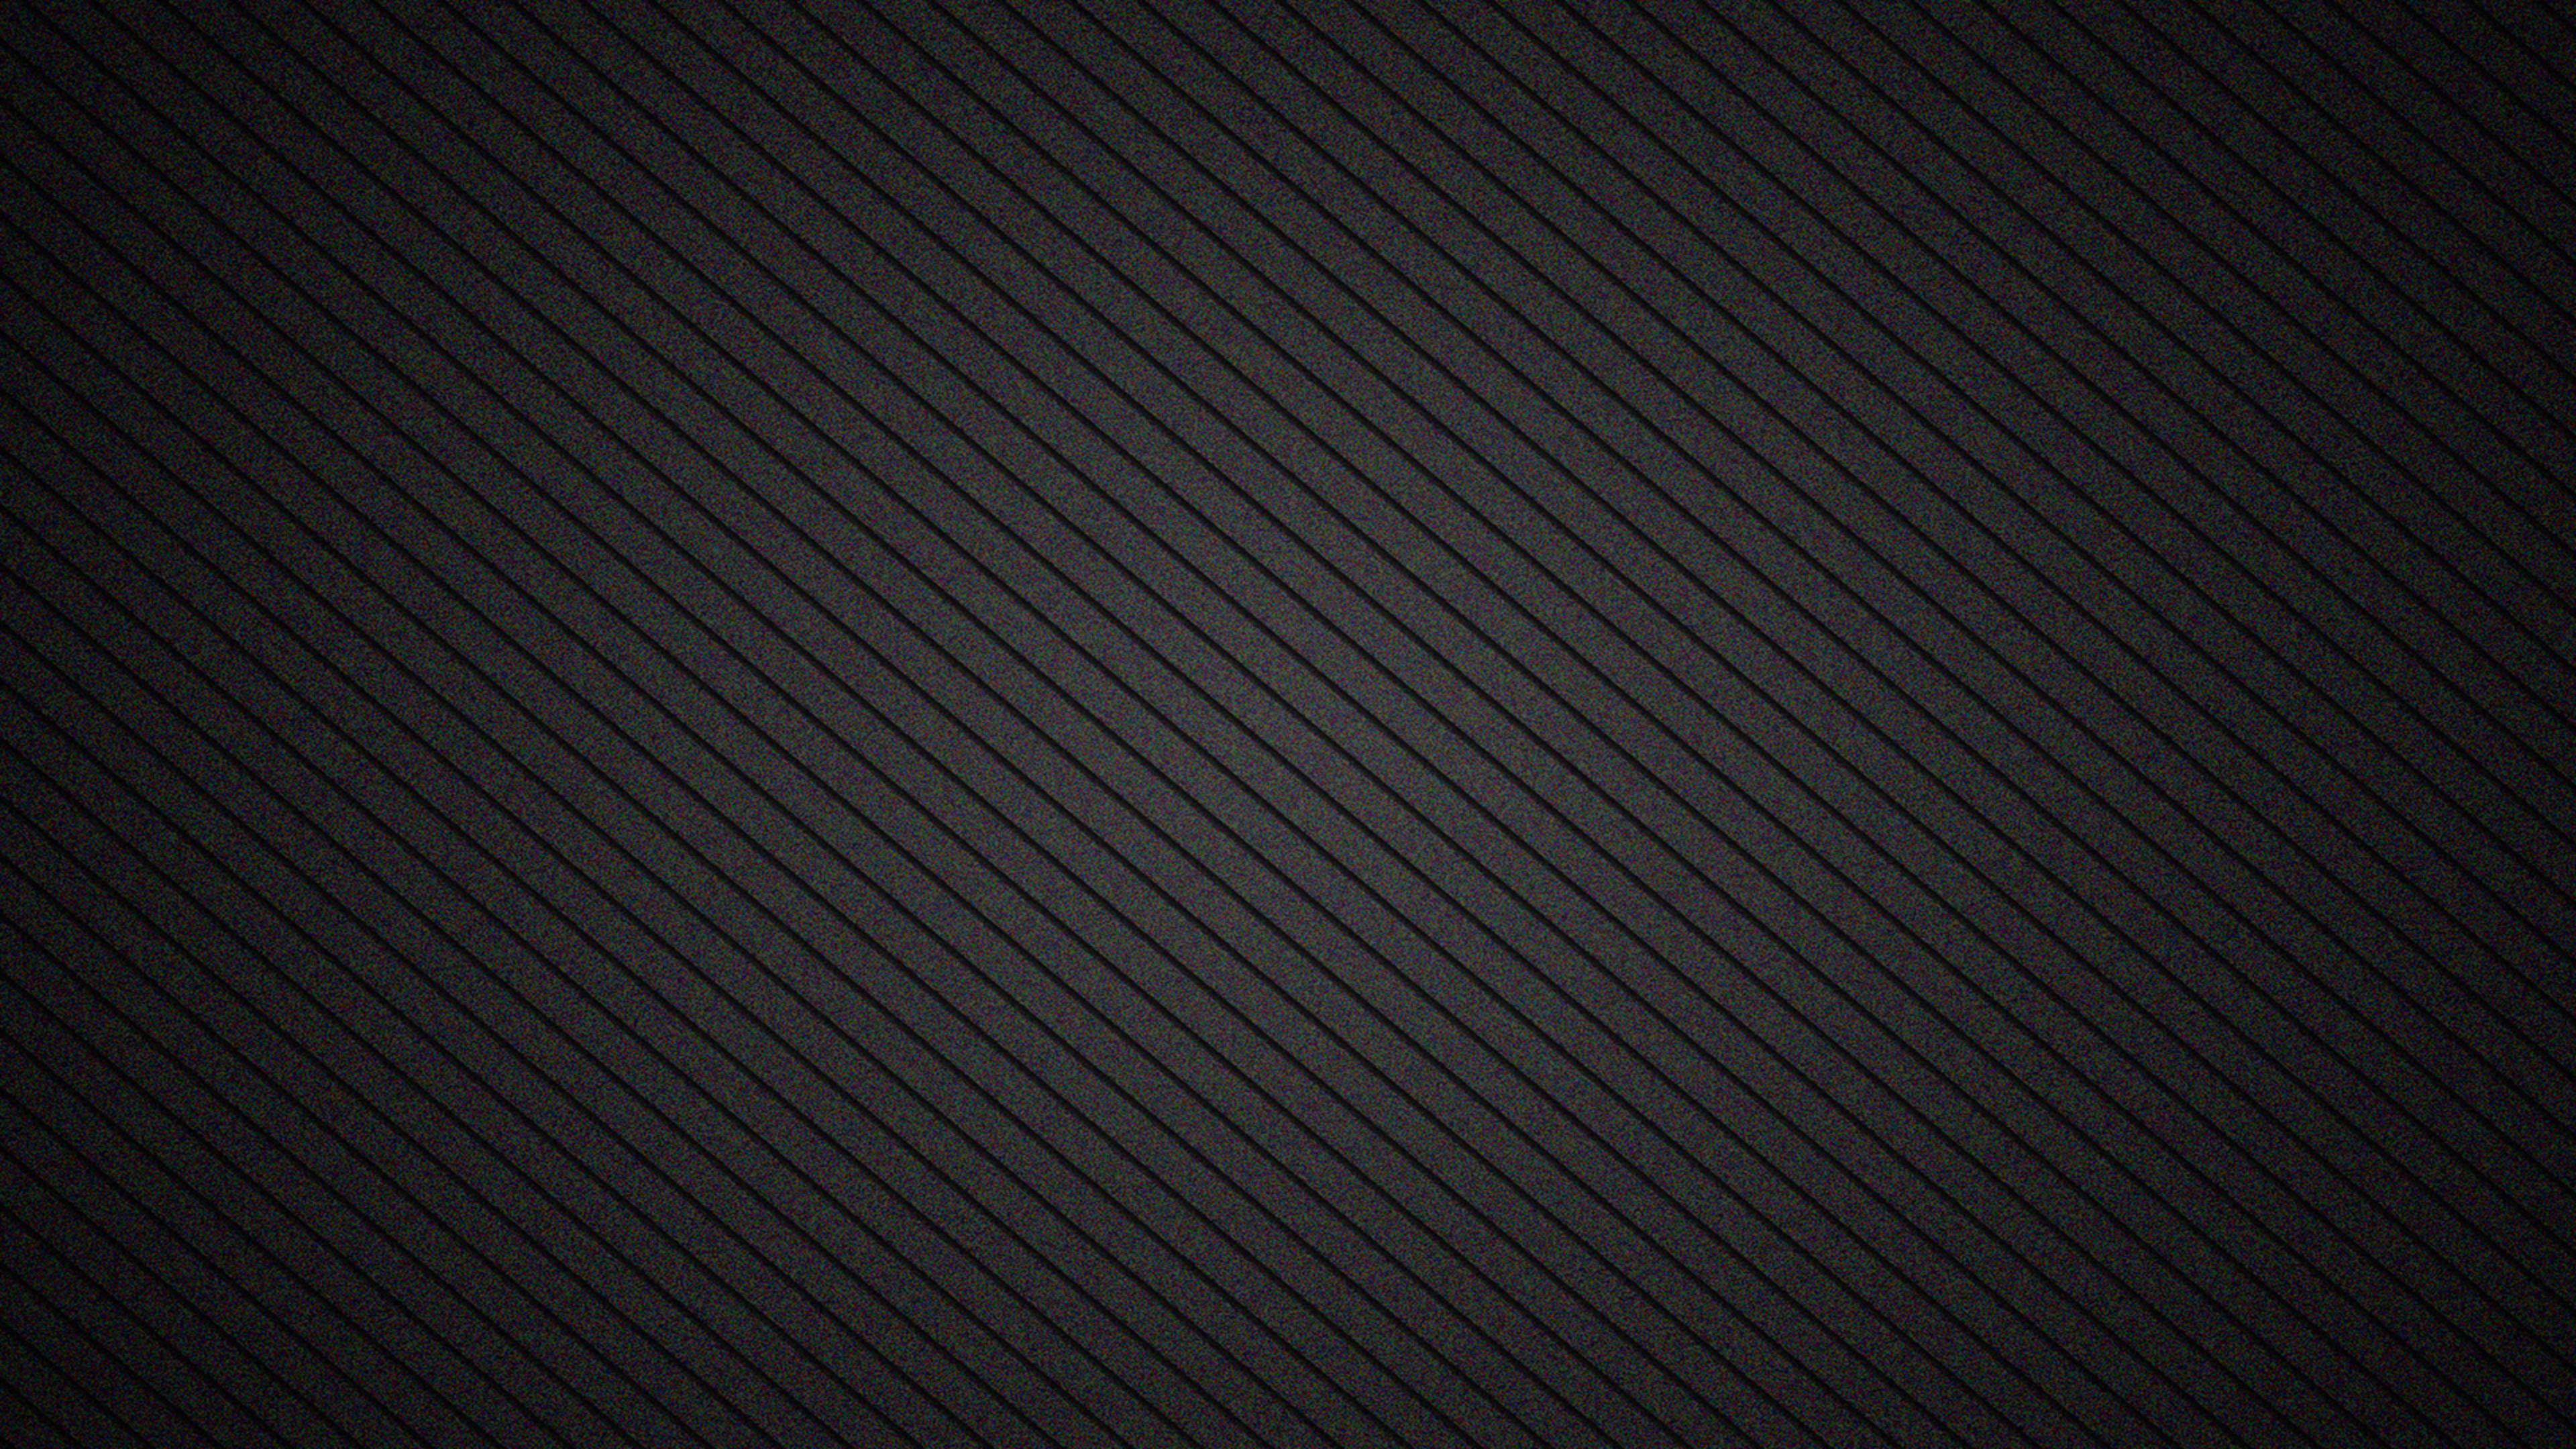 3840 x 2160 · jpeg - Black Wallpapers in 4K - WallpaperSafari